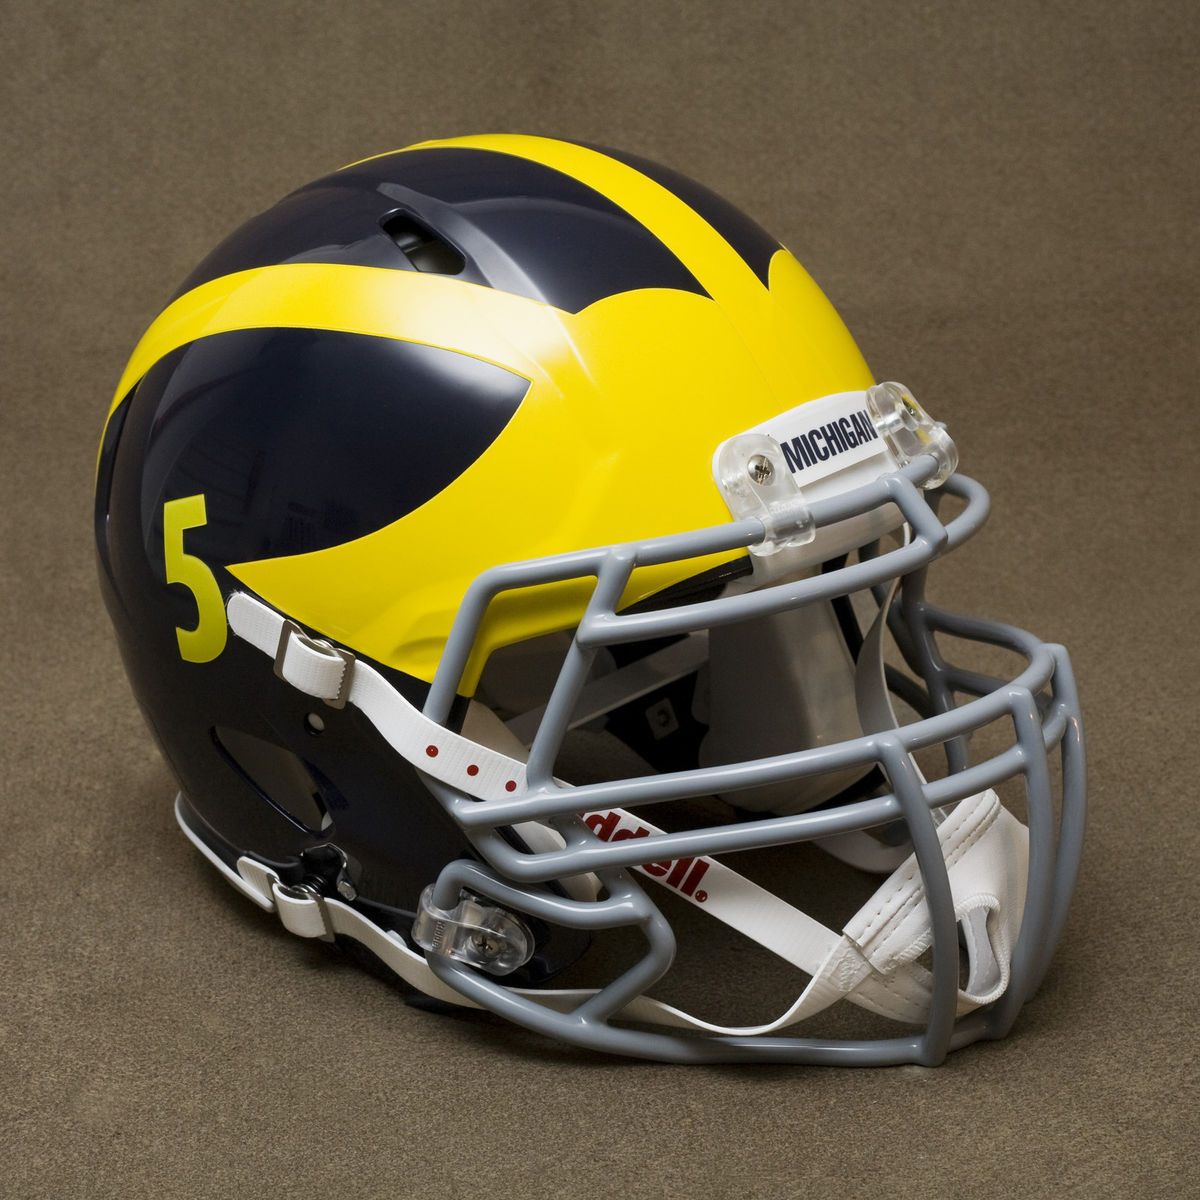 Michigan Wolverines Riddell Revolution Speed Football Helmet January 3